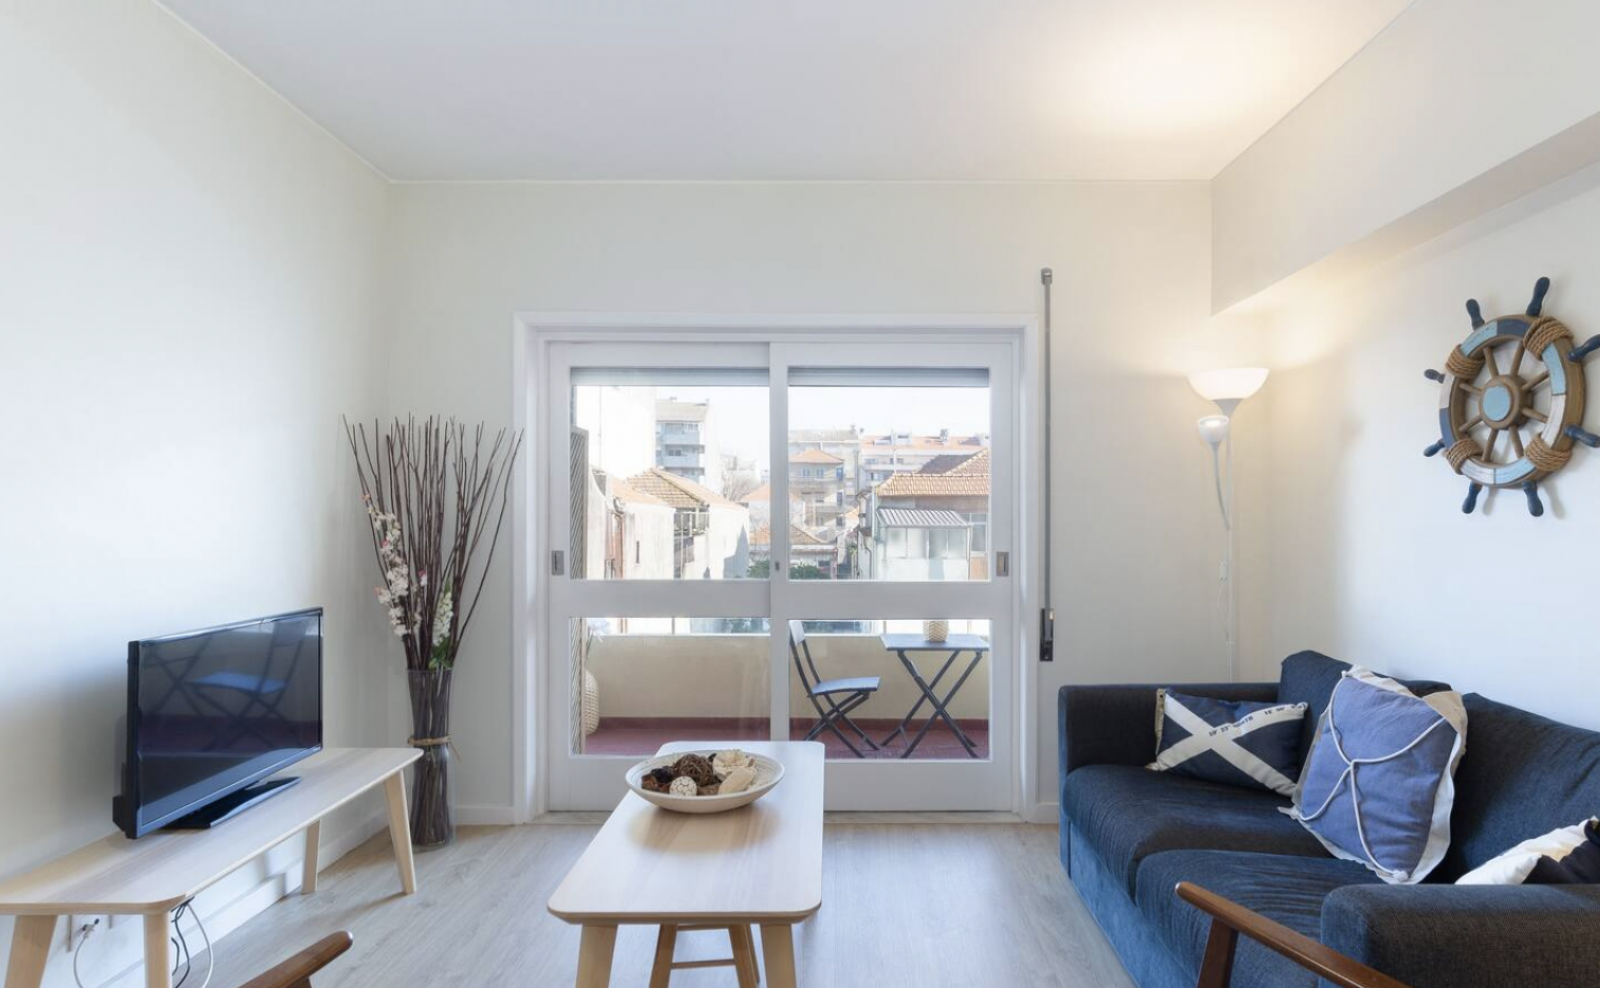 Moderno apartamento claro com varanda | Jacuzzi 